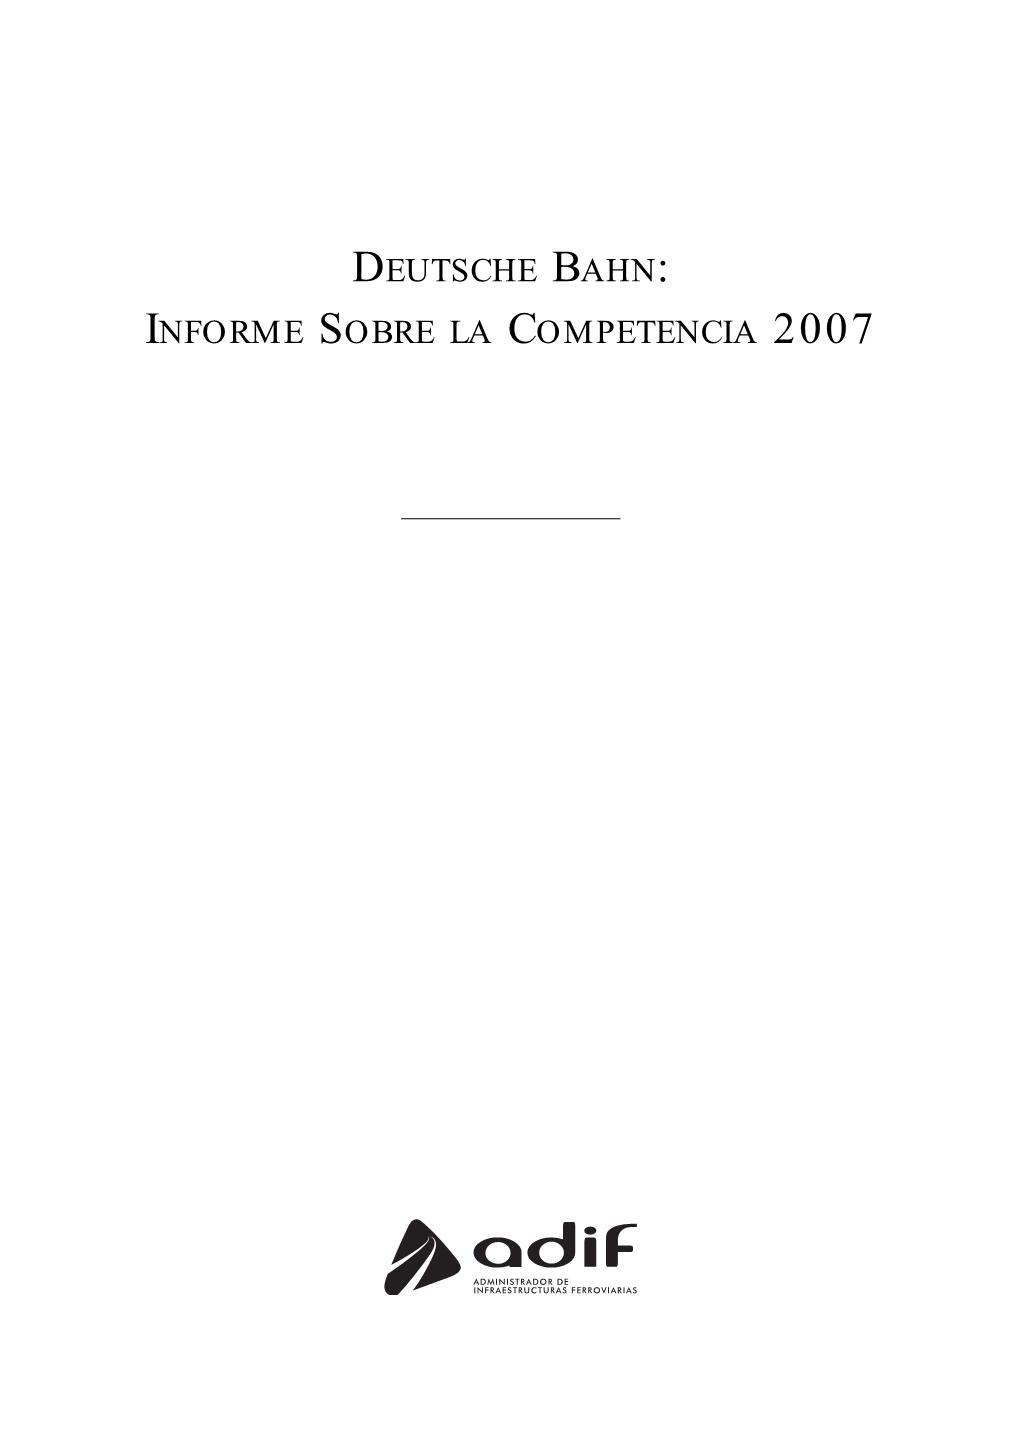 DEUTSCHE BAHN: INFORME SOBRE LA COMPETENCIA 2007 2 Documentos Internacionales